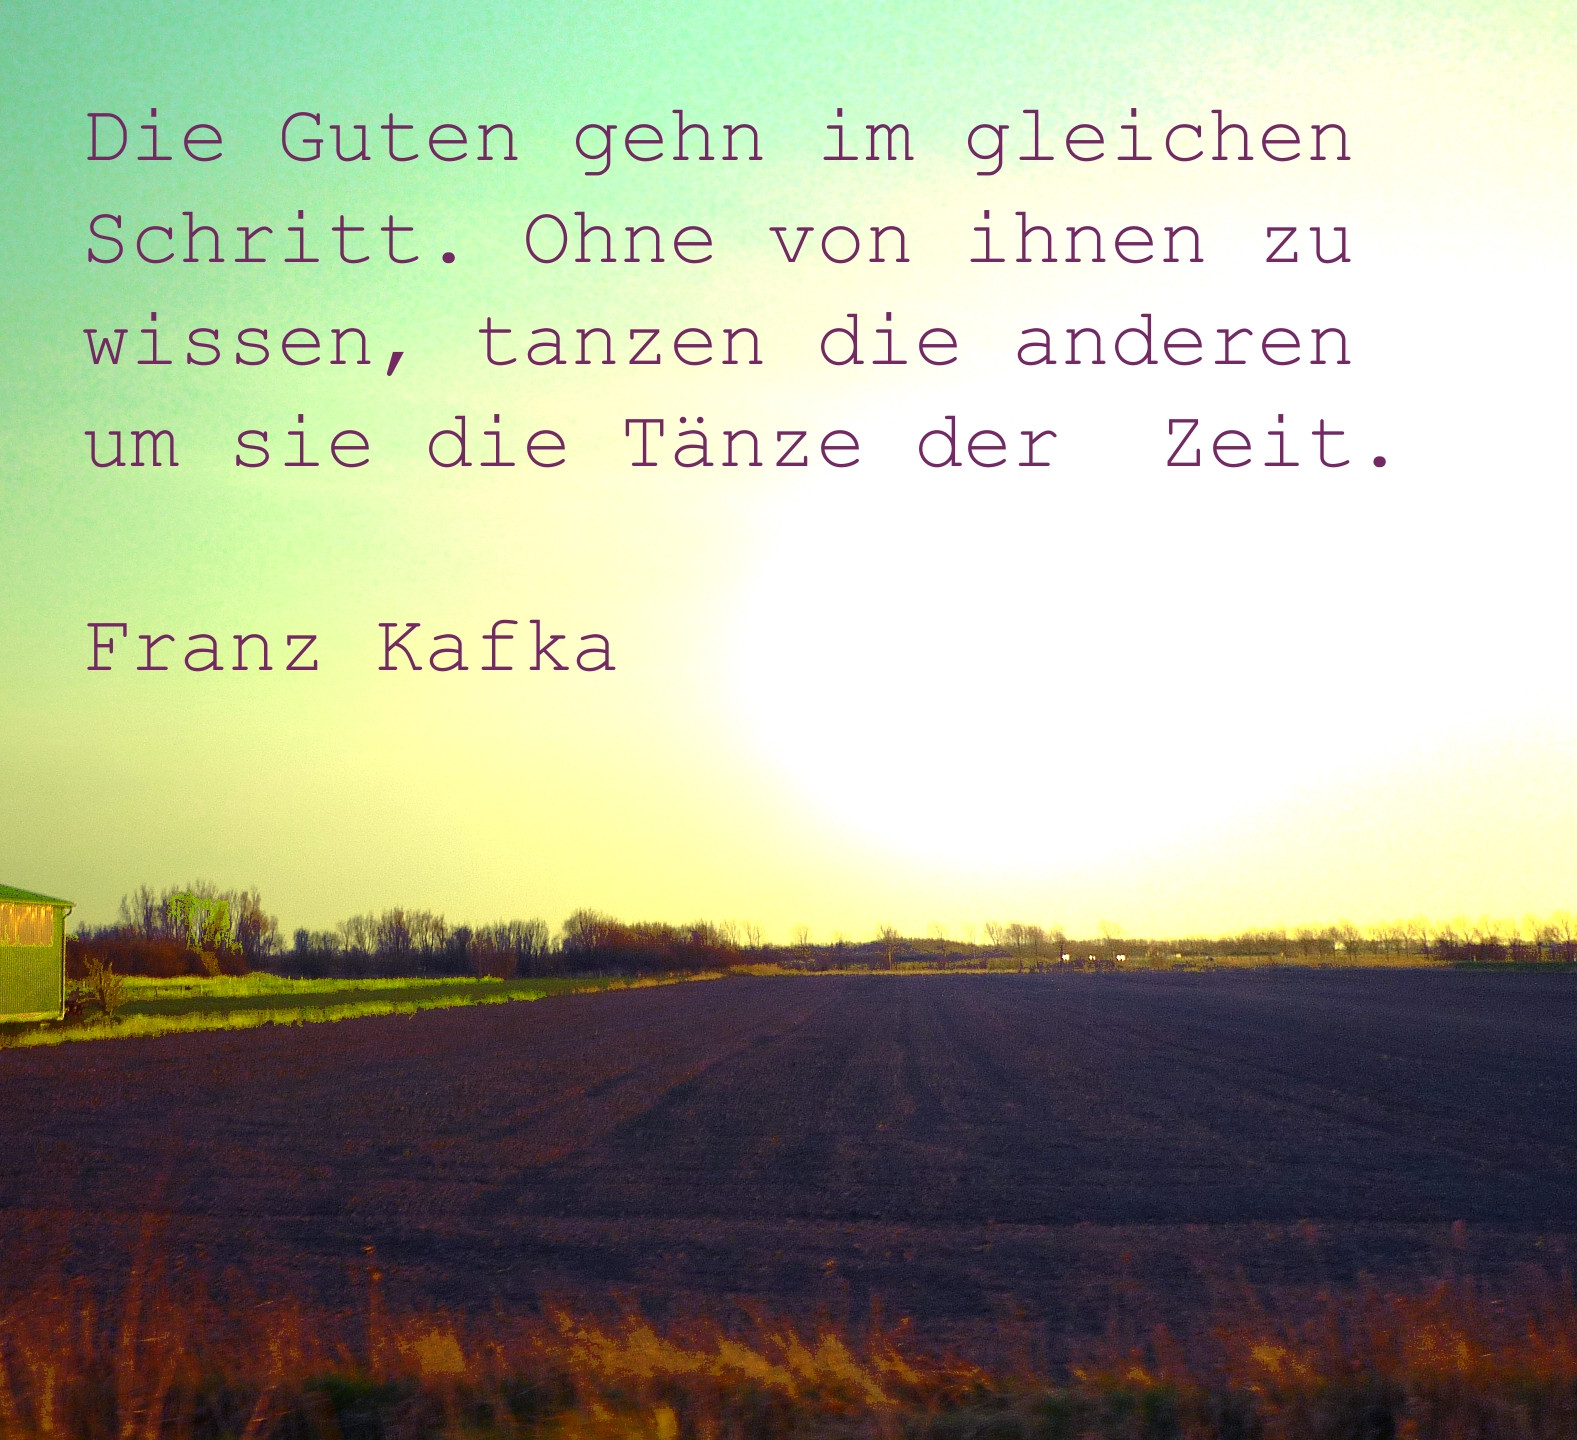 Zitate Geburtstag Kafka
 Kafka der Proceß Zitate 3